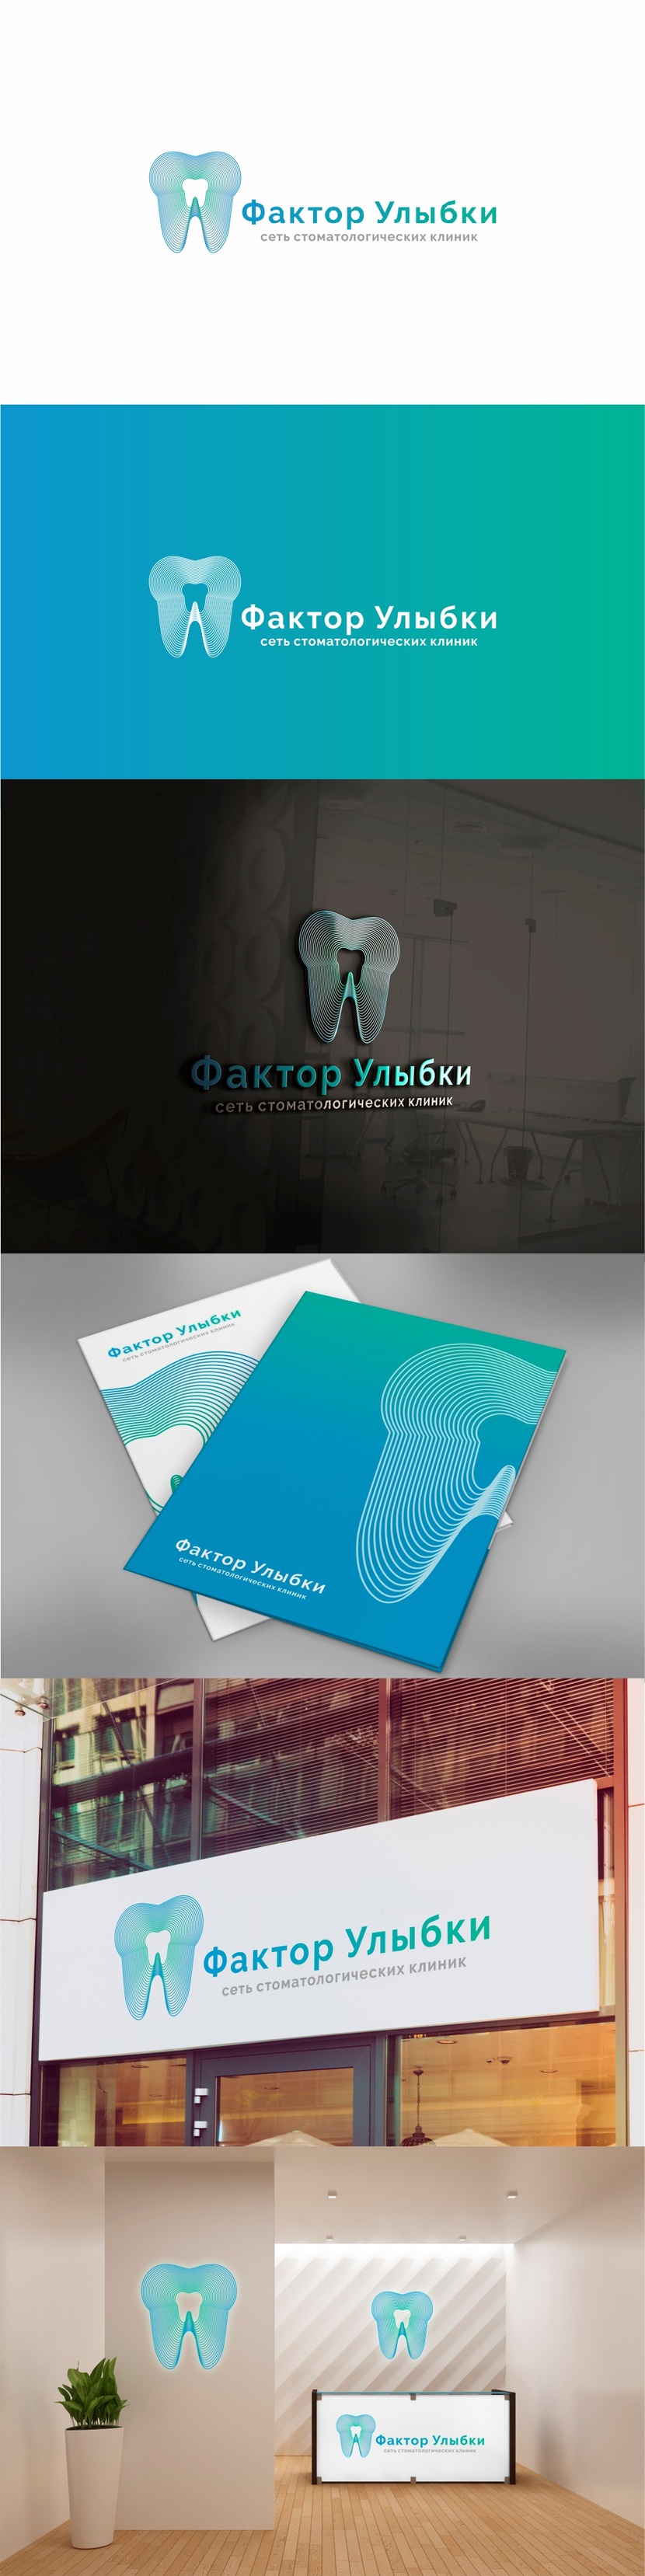 Разработка логотипа и фирменного стиля для существующей сети стоматологических клиник